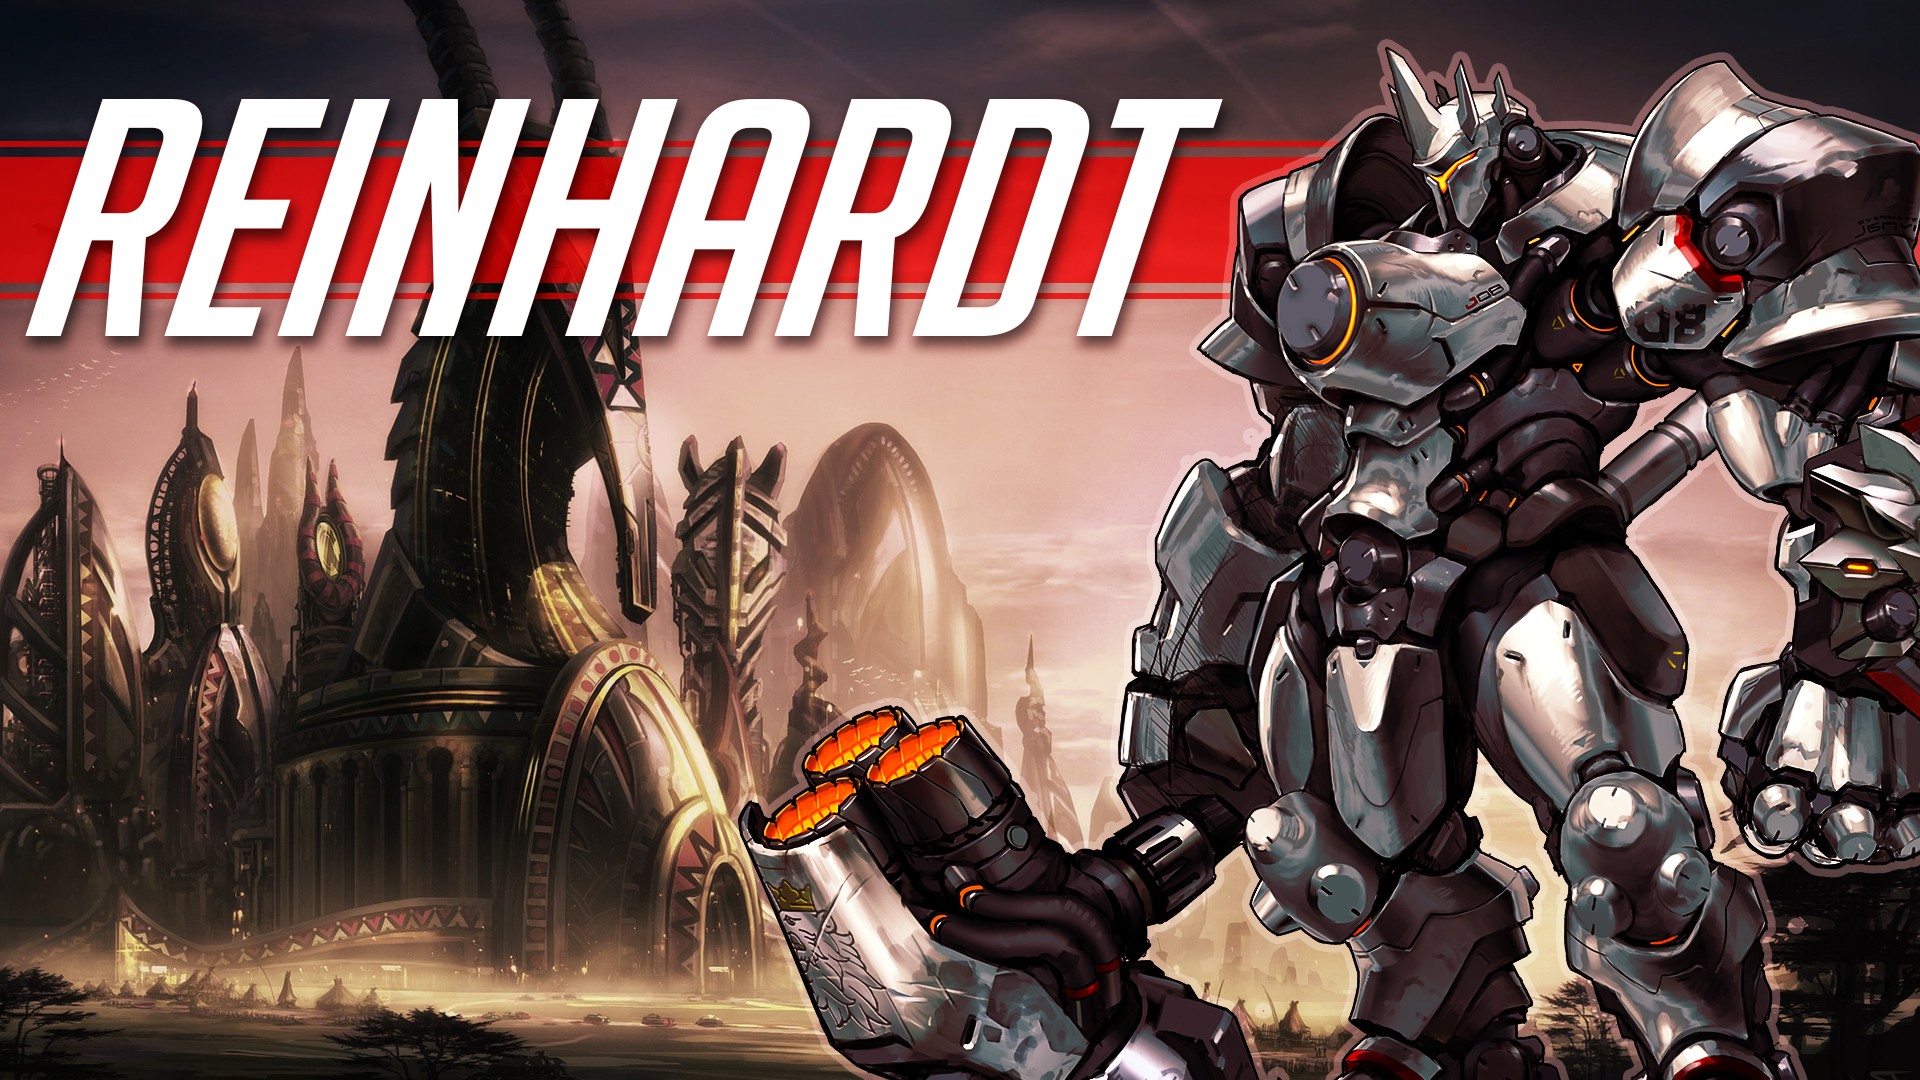 livewirehd (Author), Reinhardt, Reinhardt Wilhelm, Overwatch, Blizzard Entertainment, Video Games Wallpaper